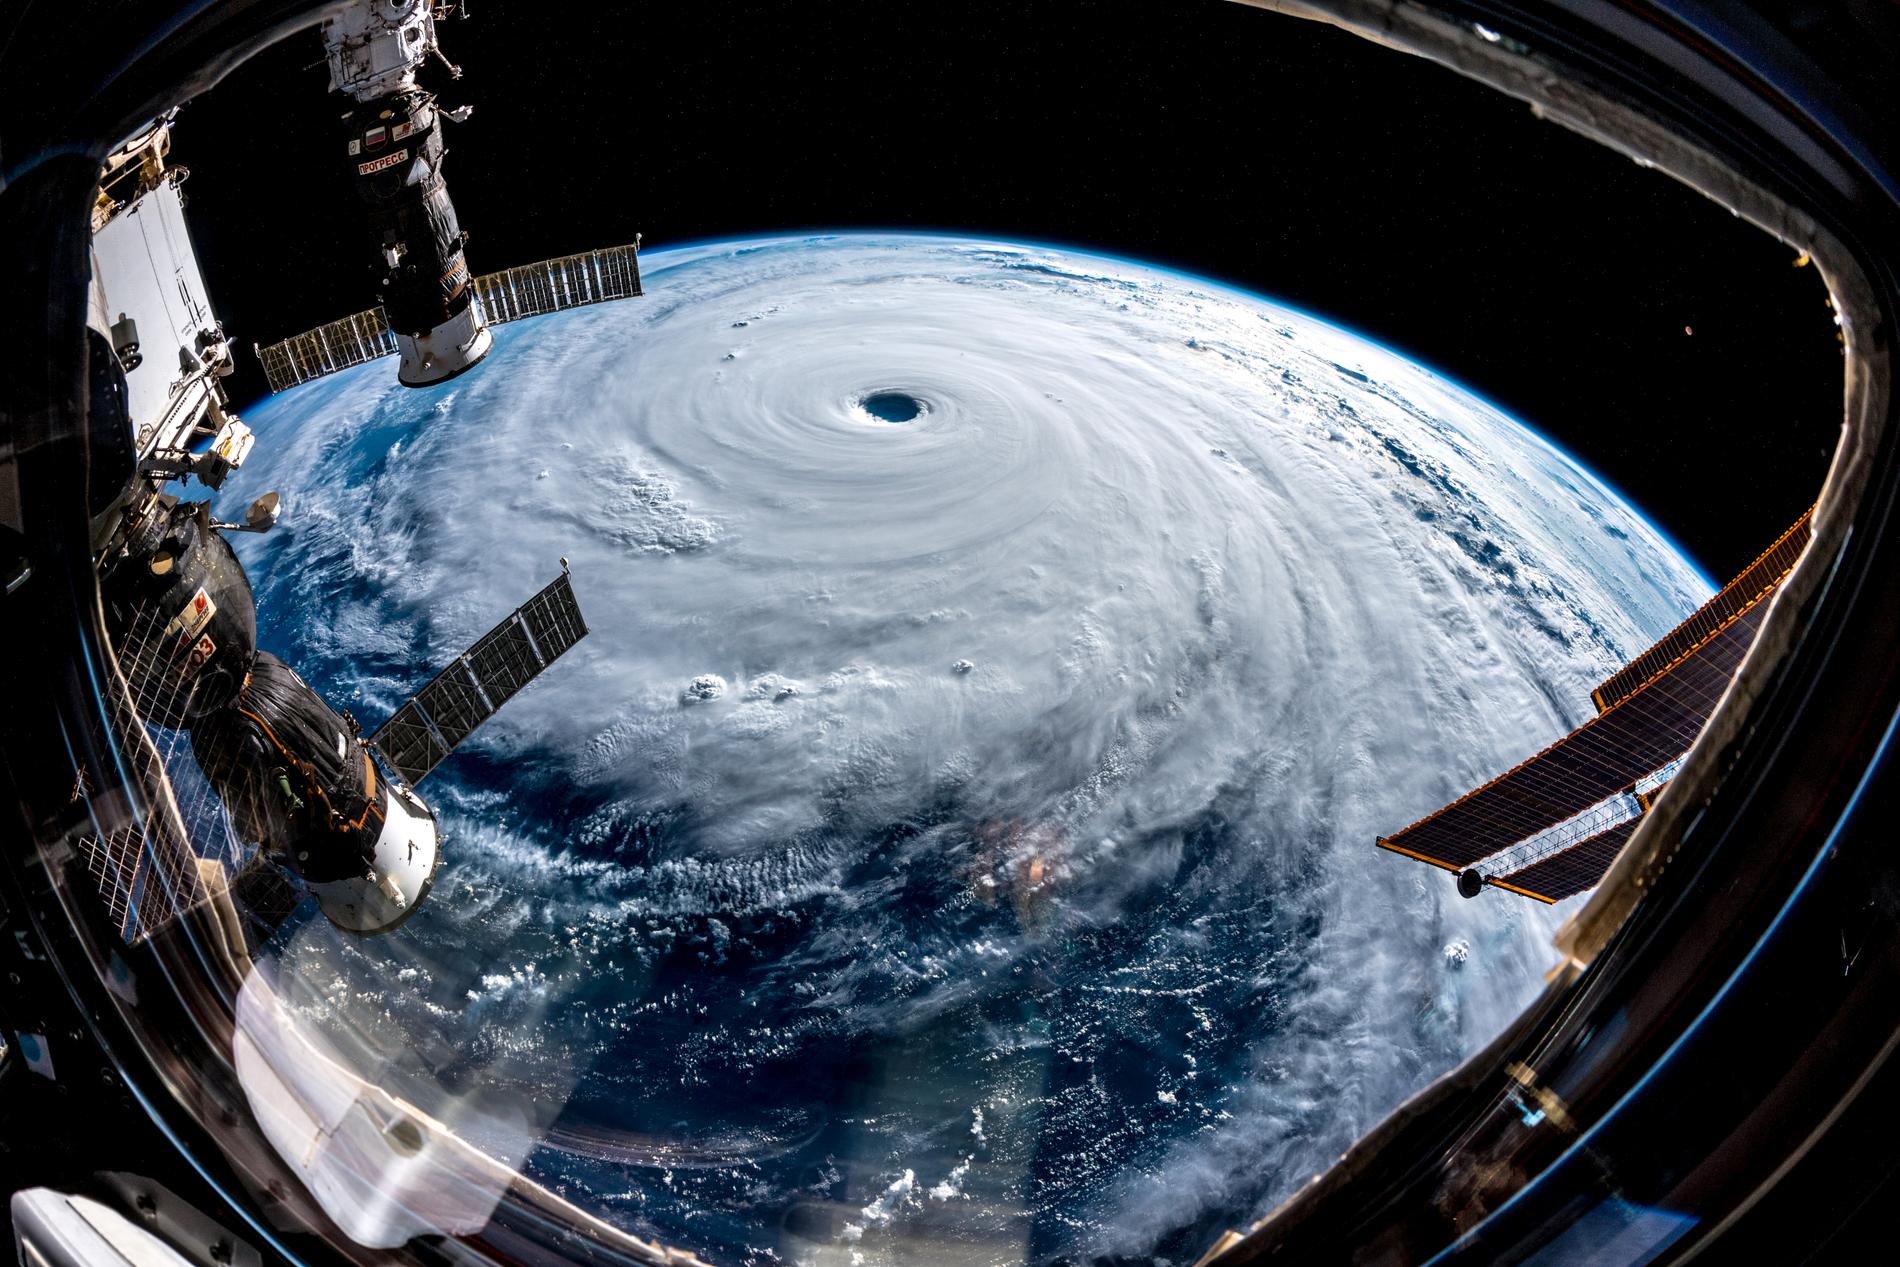 Tyfonen Trami fotograferad astronauten Alexander Gerst på den Internationella rymdstationen.